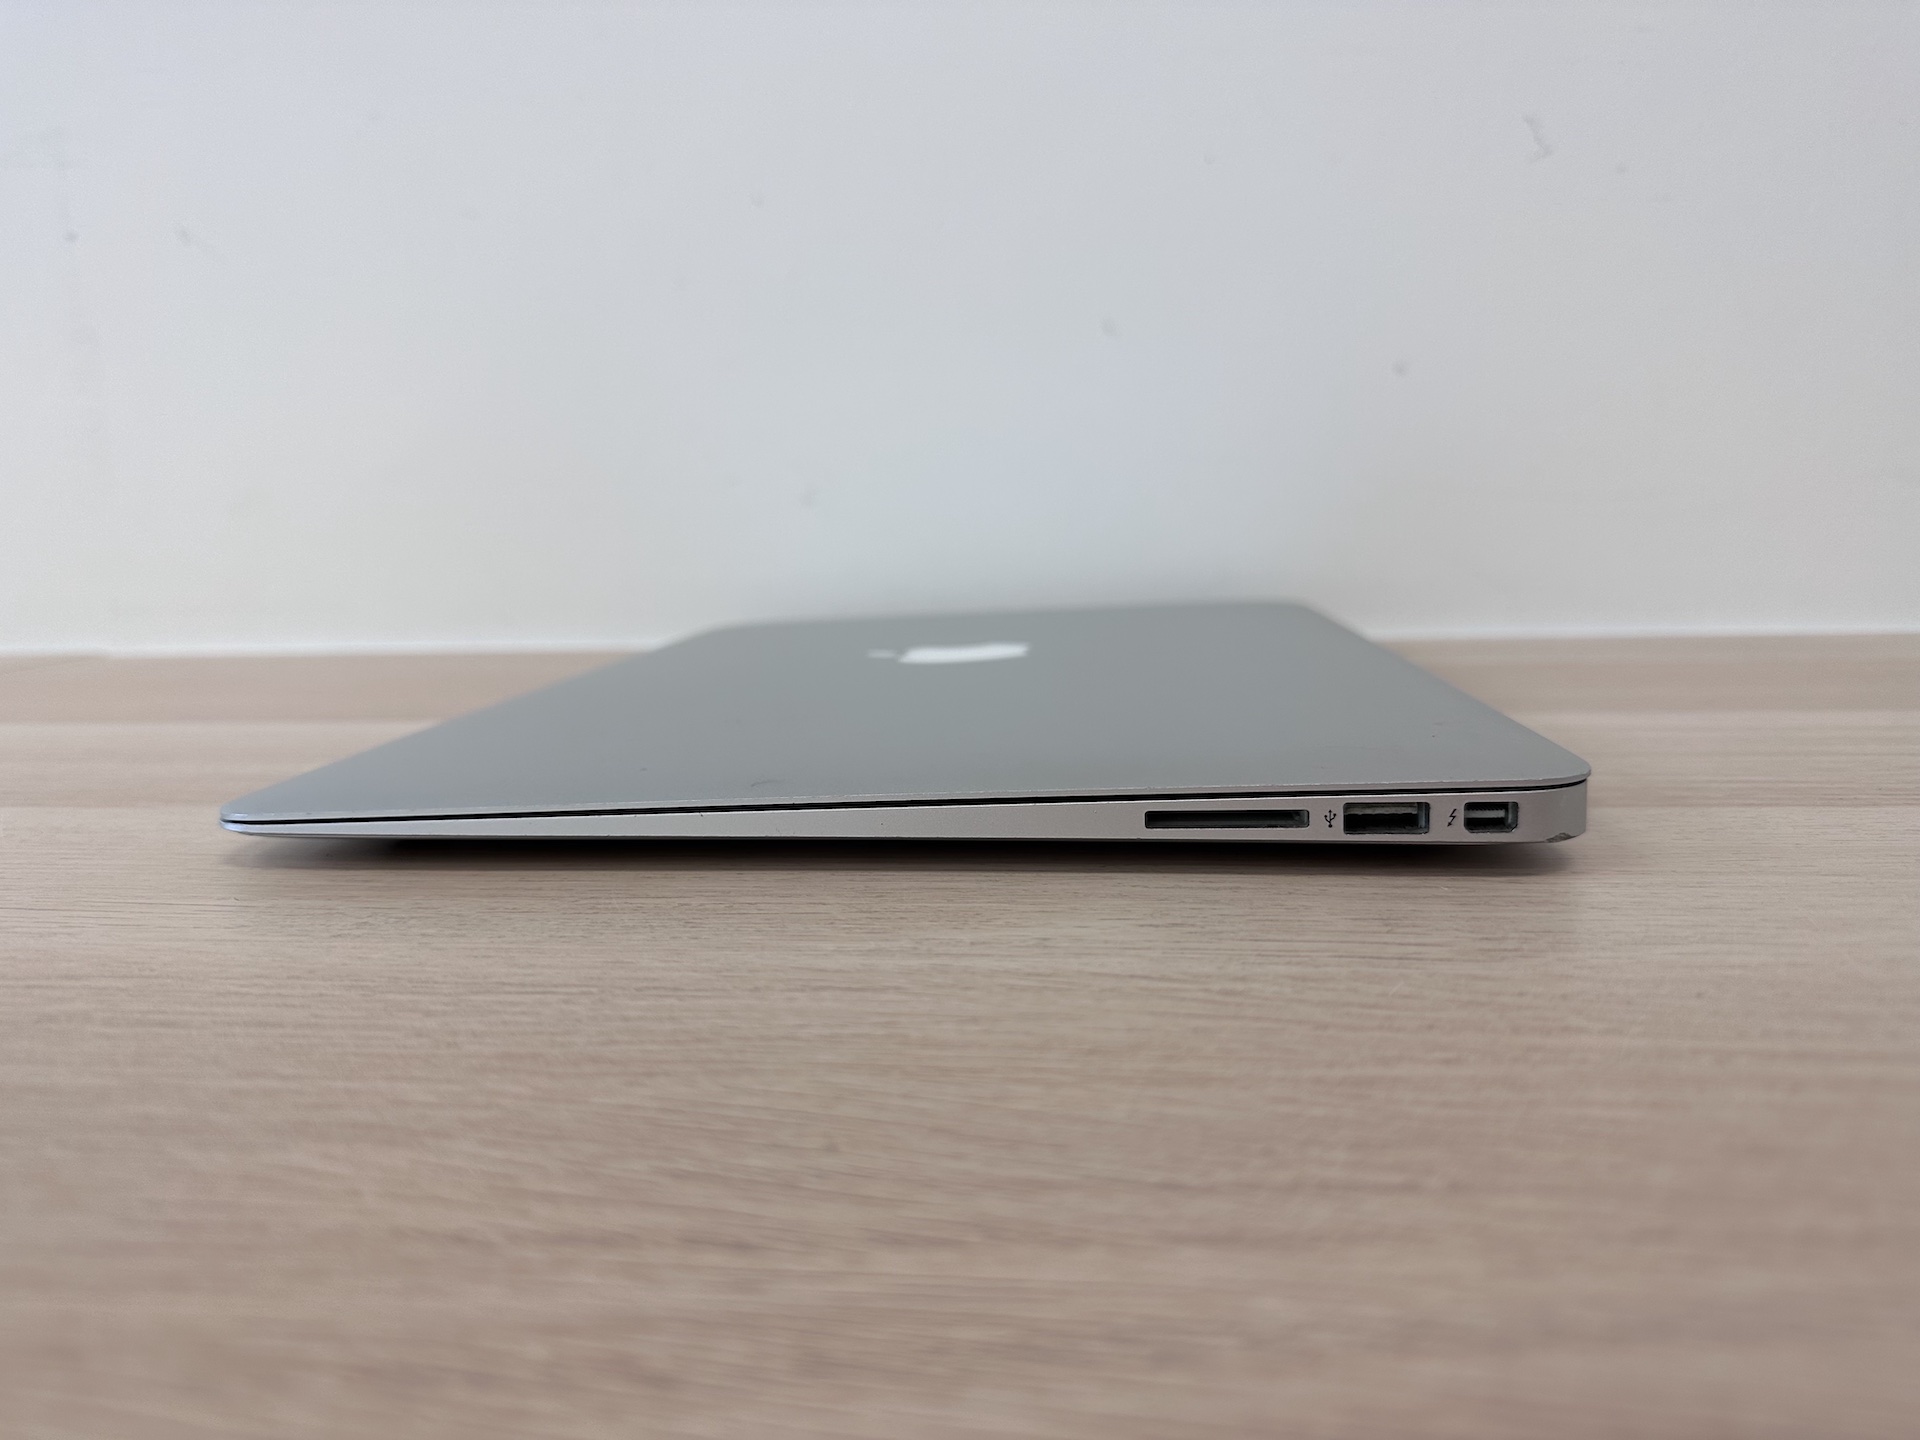 MacBook Air (13-inch Mid 2013)‎ - Repair Apple Computers